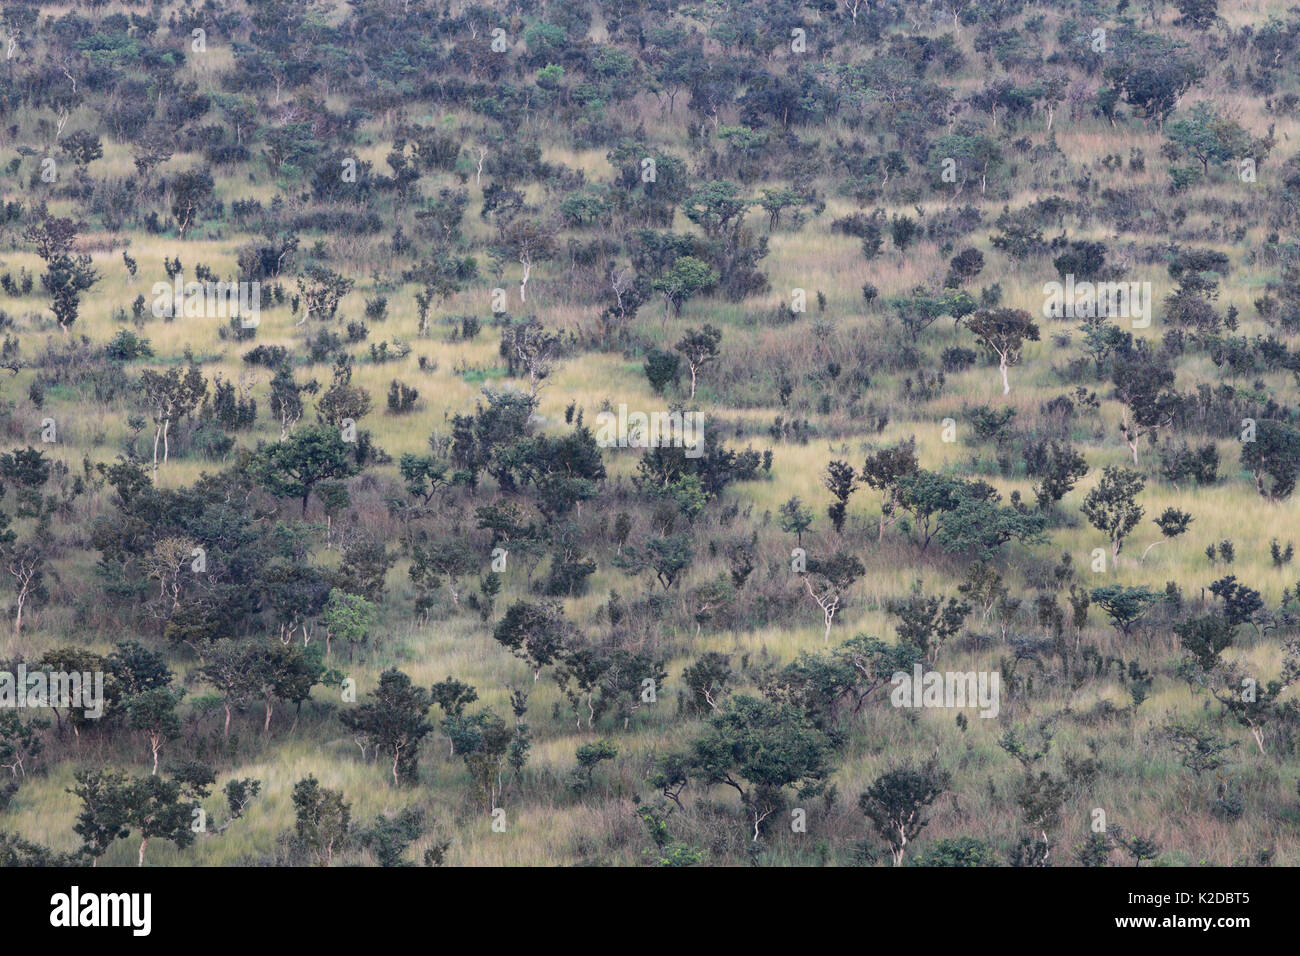 Vista aérea de patchwork de sabana y bosque galería, Plateau Bateke NP, Gabón. Foto de stock